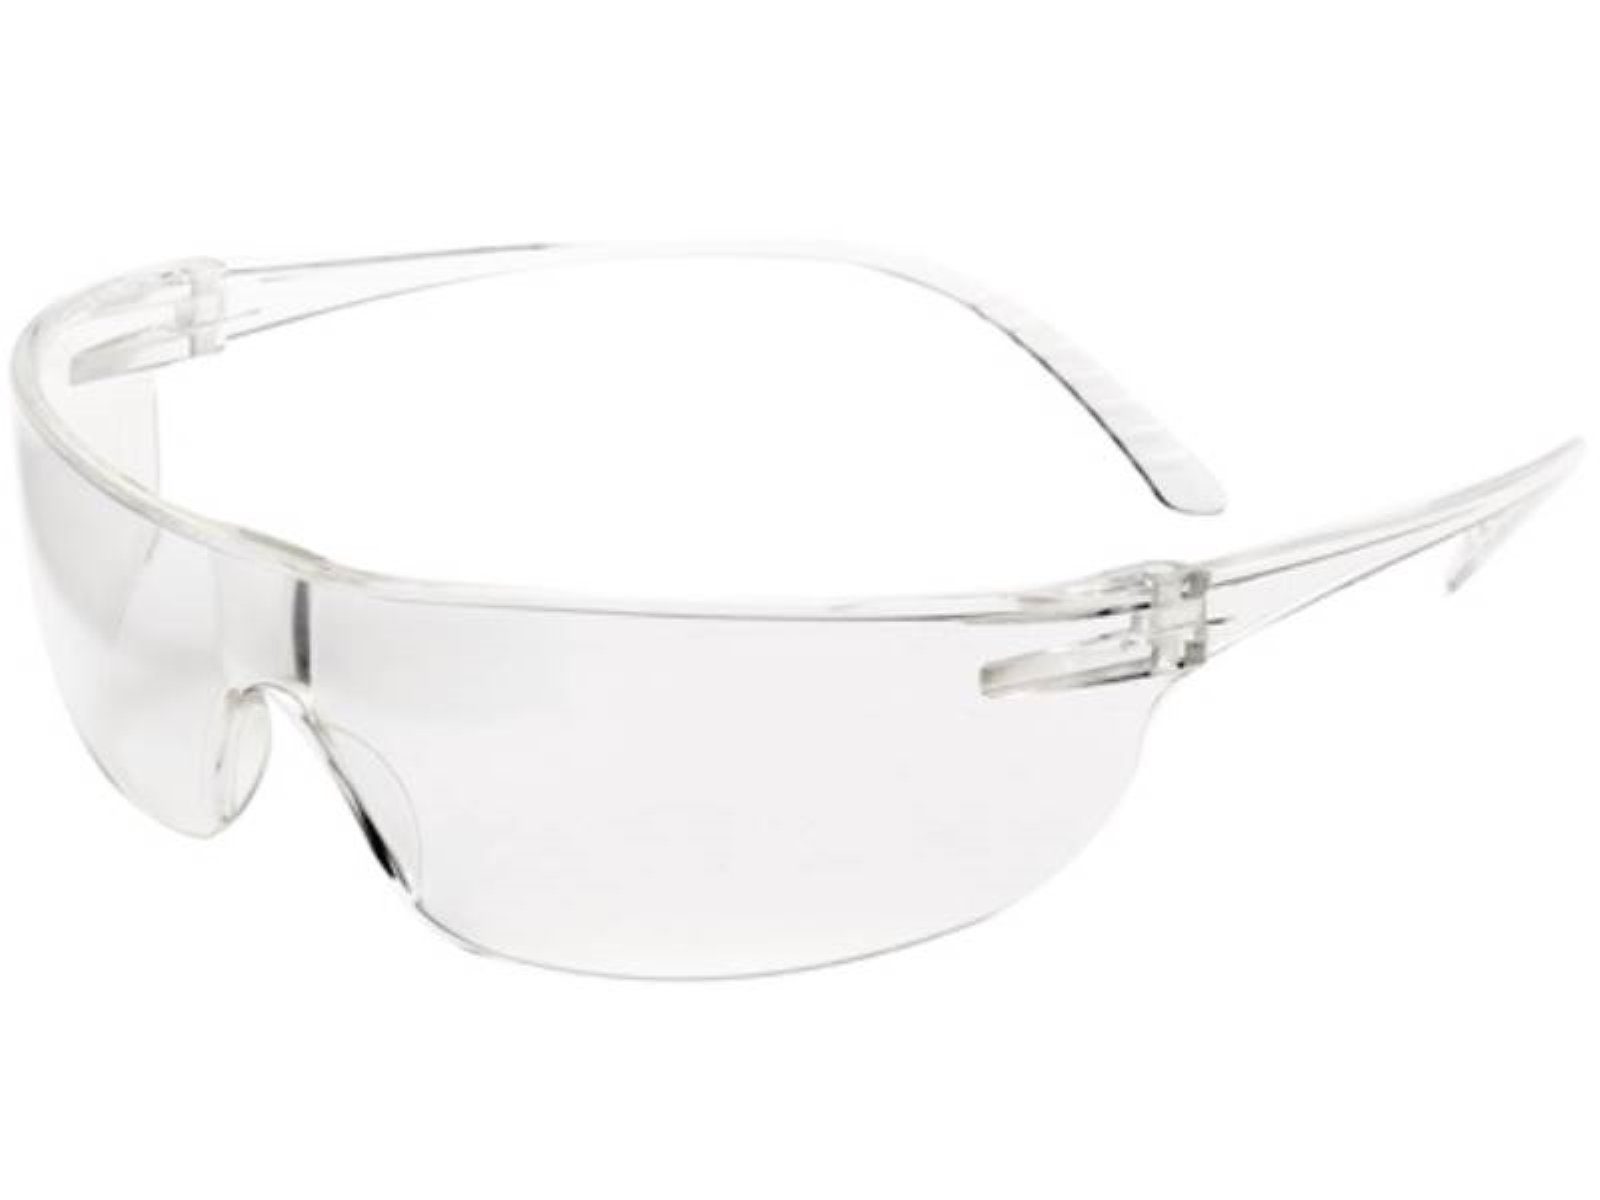 Arbeitsschutzbrille 166 klar EN Schutzbrille SVP-200 EN16 Bügel HONEYWELL PC Honeywell klar,Scheibe